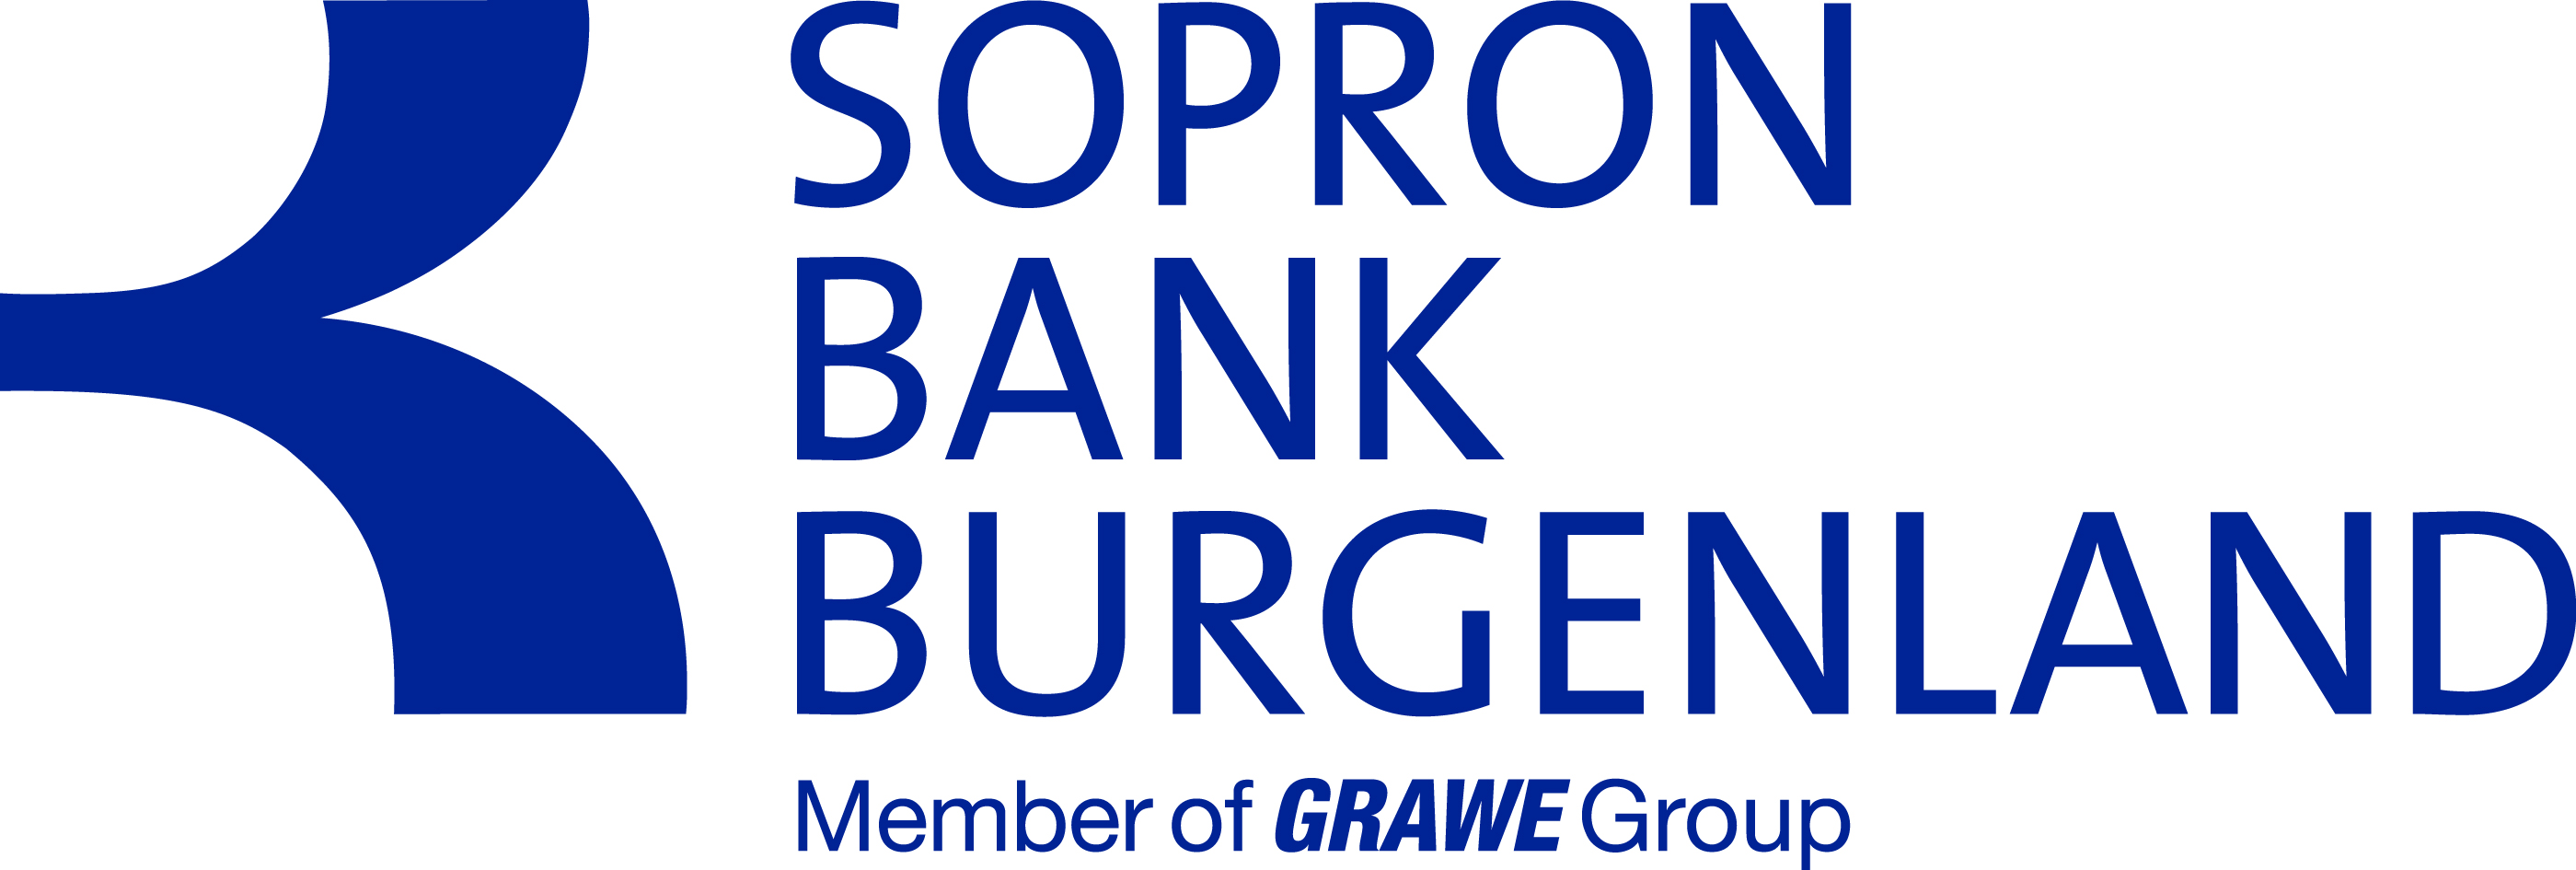 A Pénzforgalmi és bankkártya üzletszabályzat 1. sz. melléklete HIRDETMÉNY A KONDÍCIÓS LISTÁRÓL A) Vállalati kondíciók A Sopron Bank Zrt.